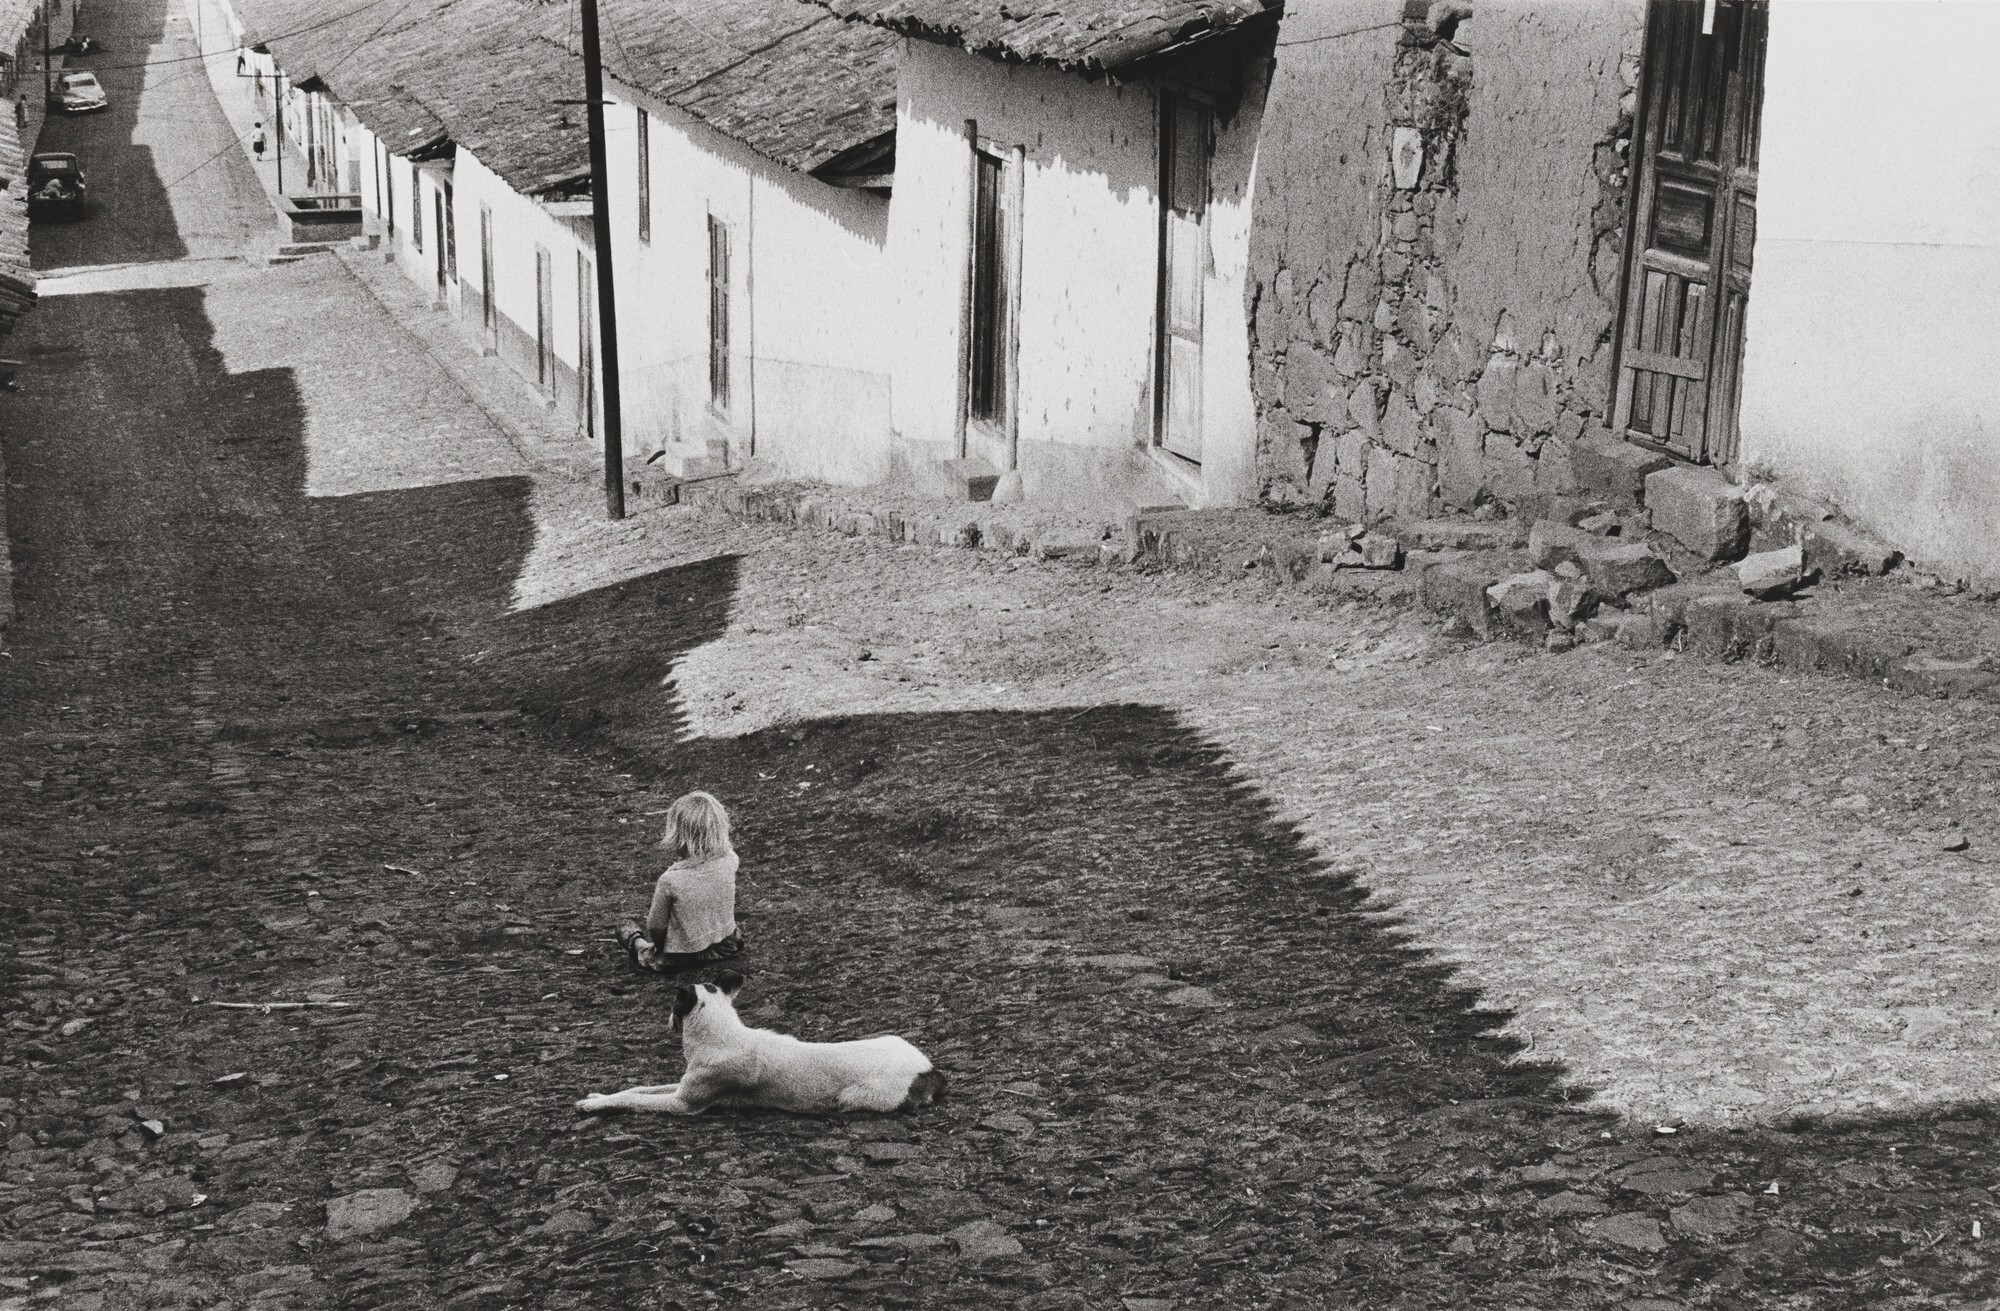 Пацкуаро, Мексика, 1963. Фотограф Анри Картье-Брессон